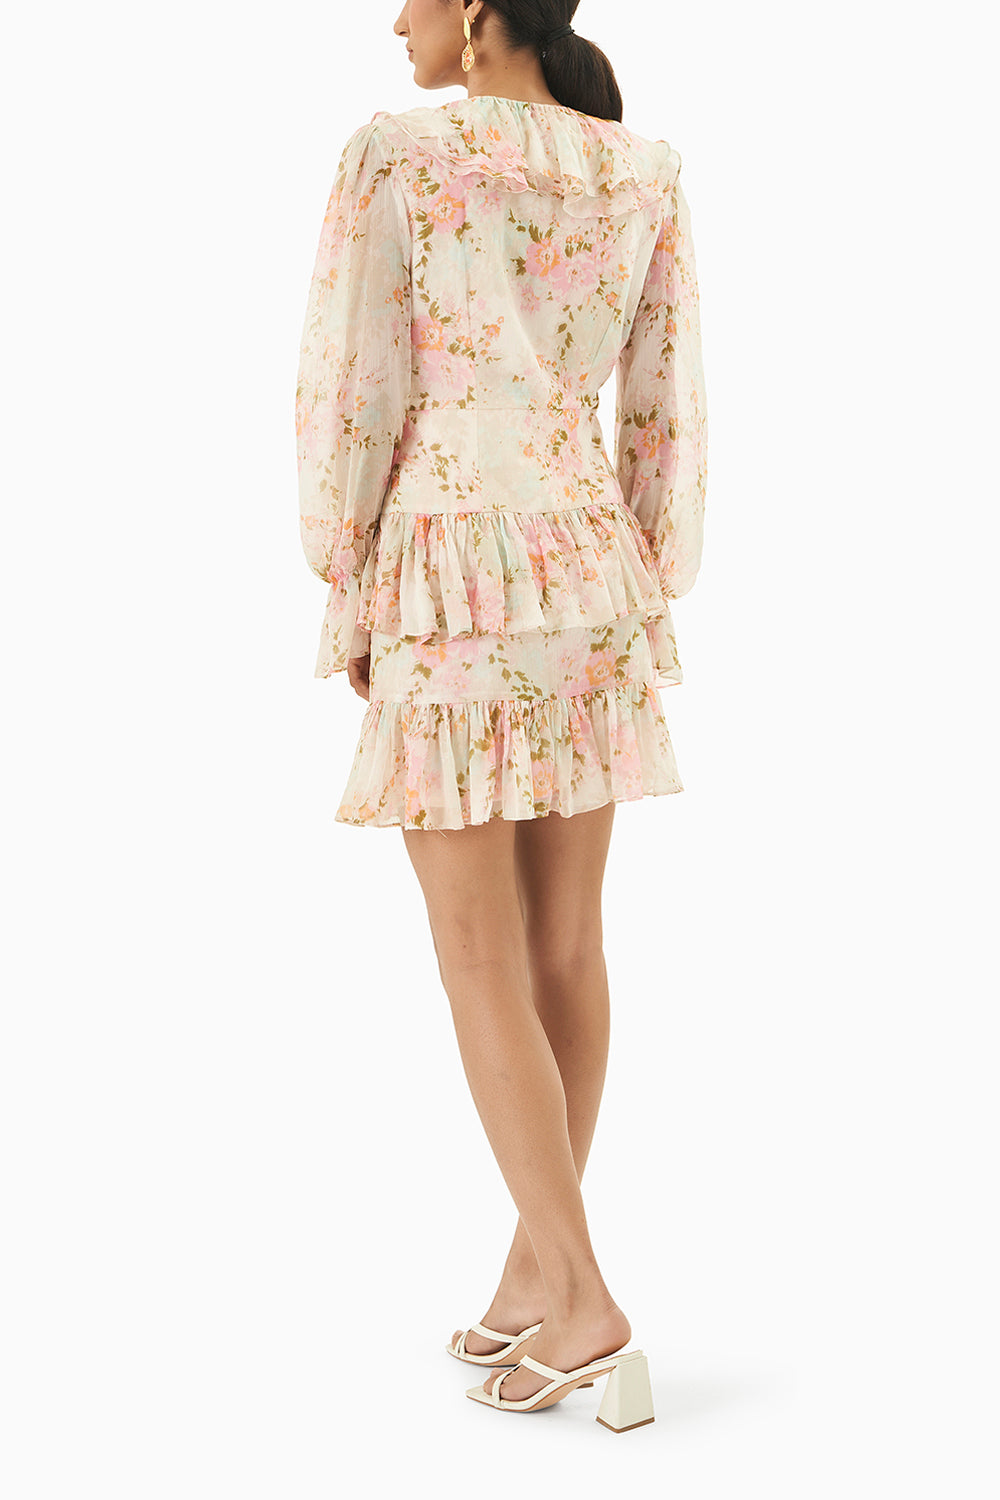 Pastel Pink Short Cotton Lace Dress